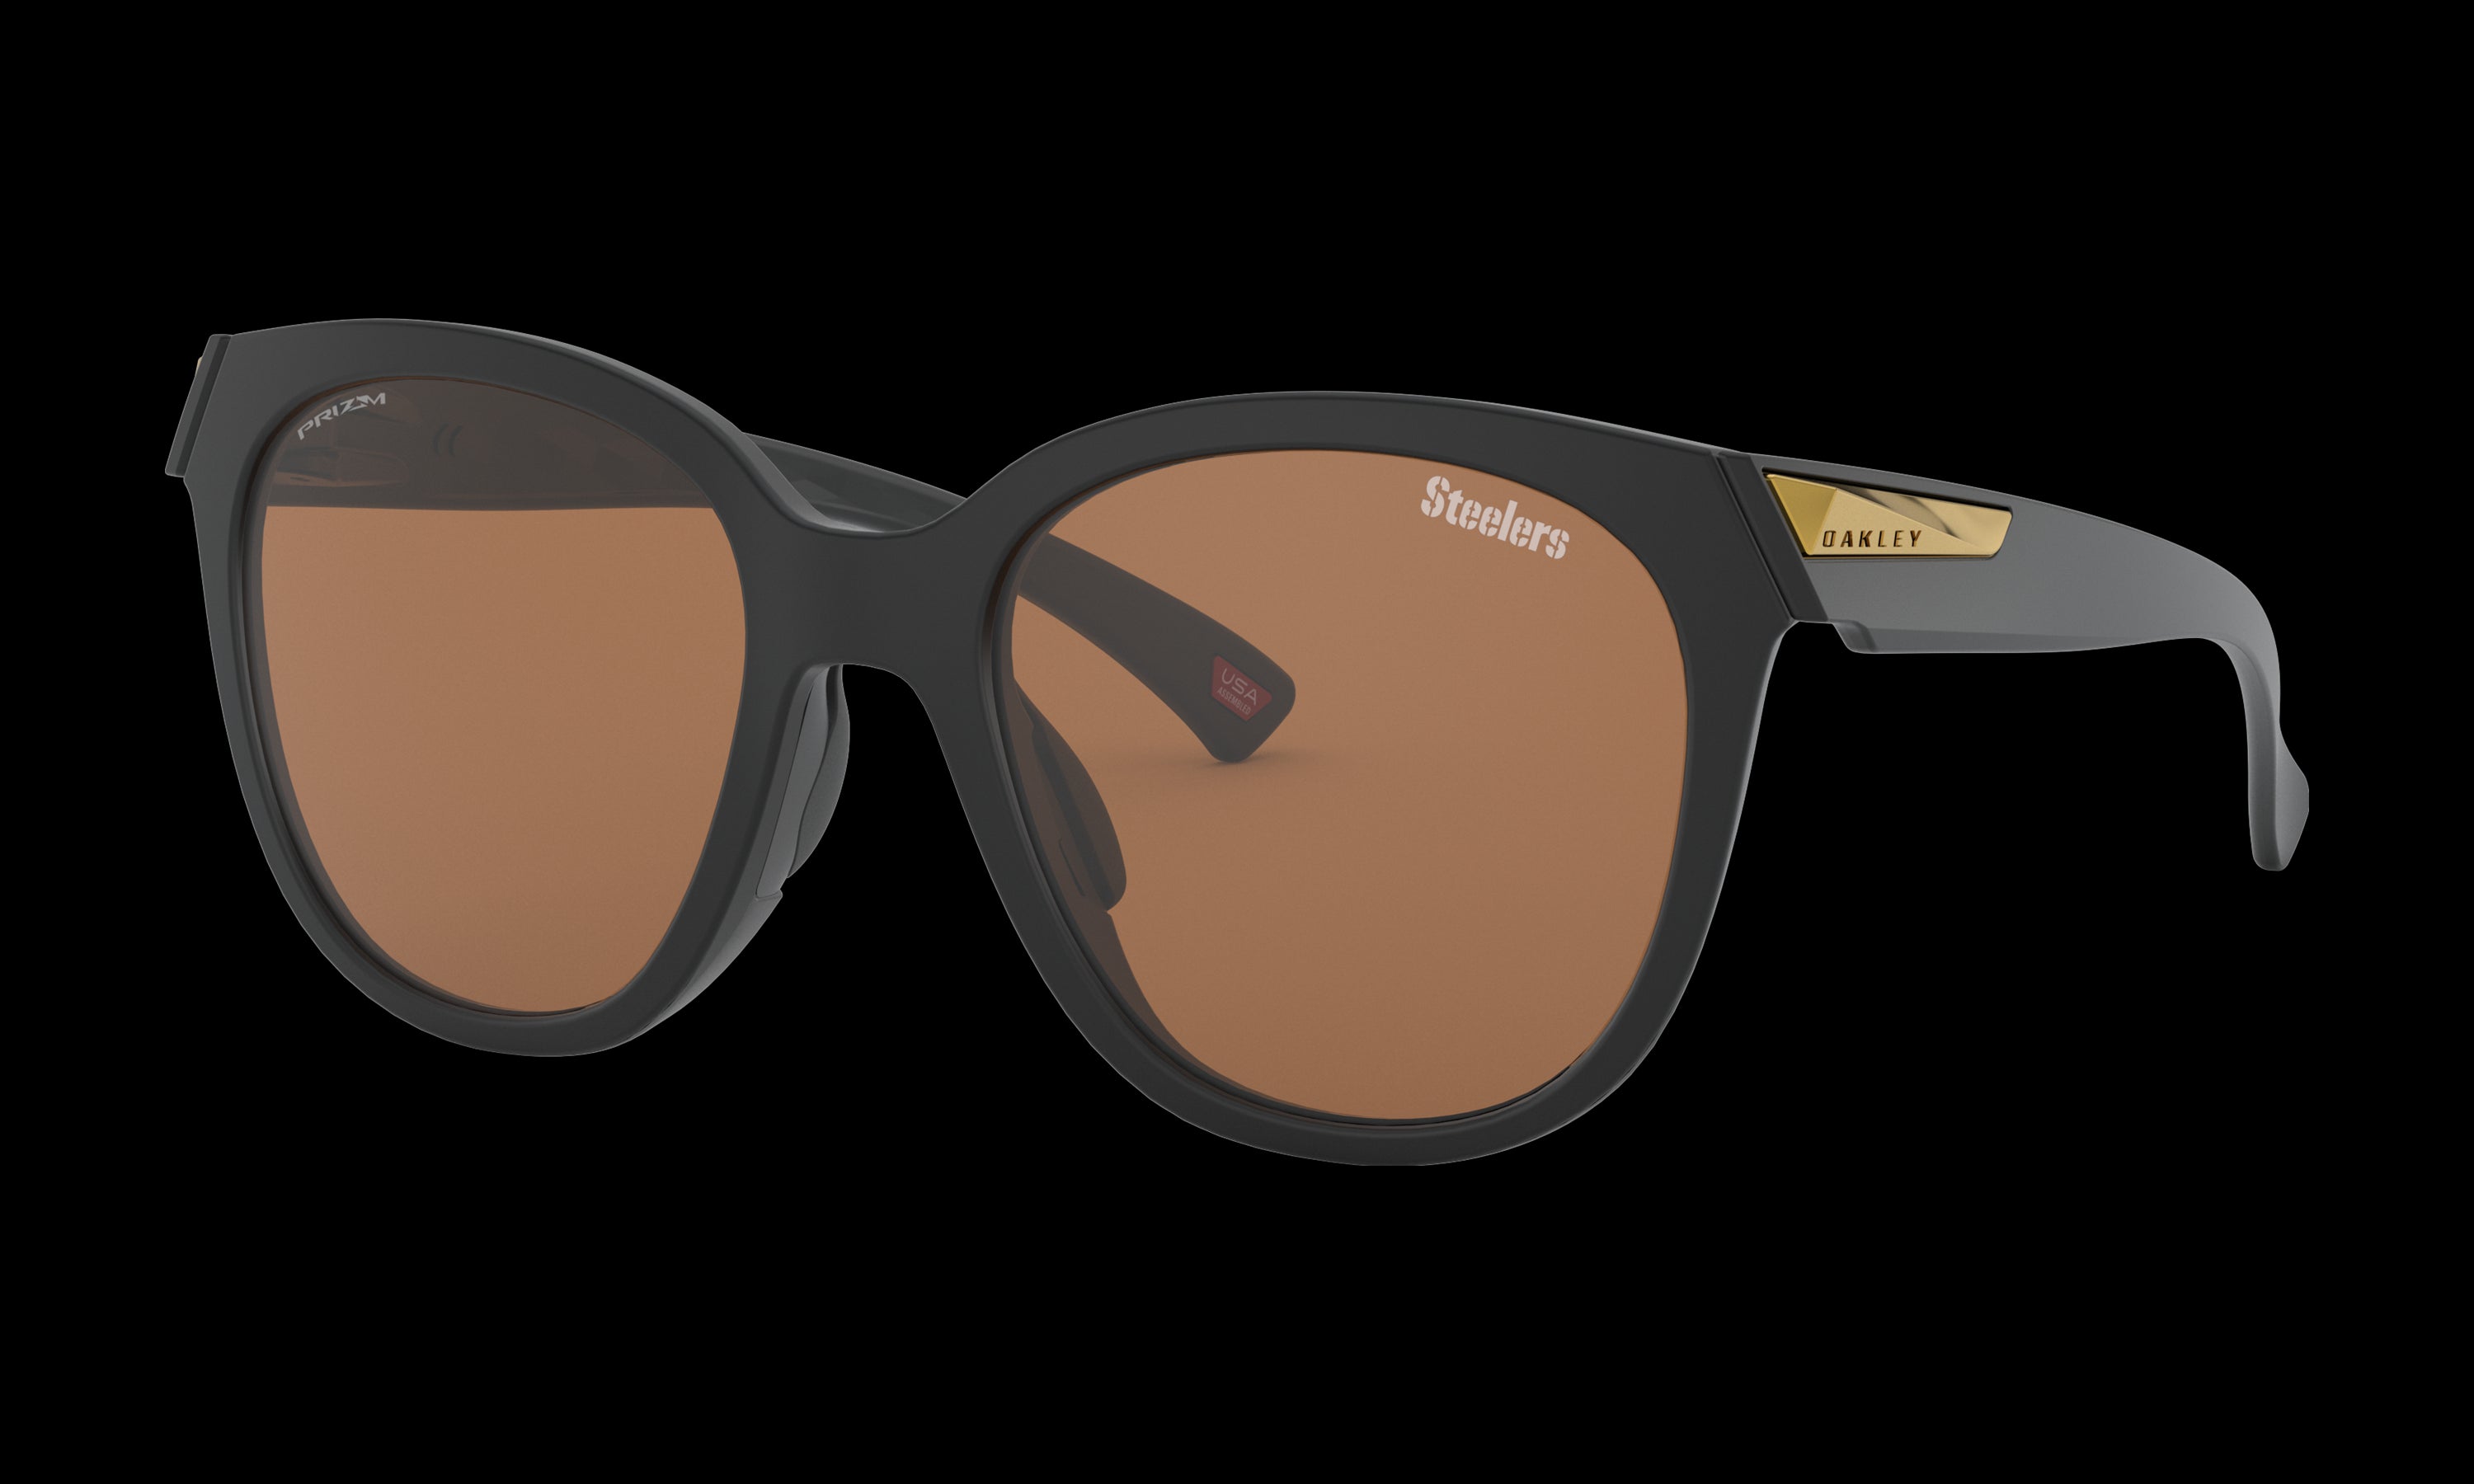 oakley steelers sunglasses